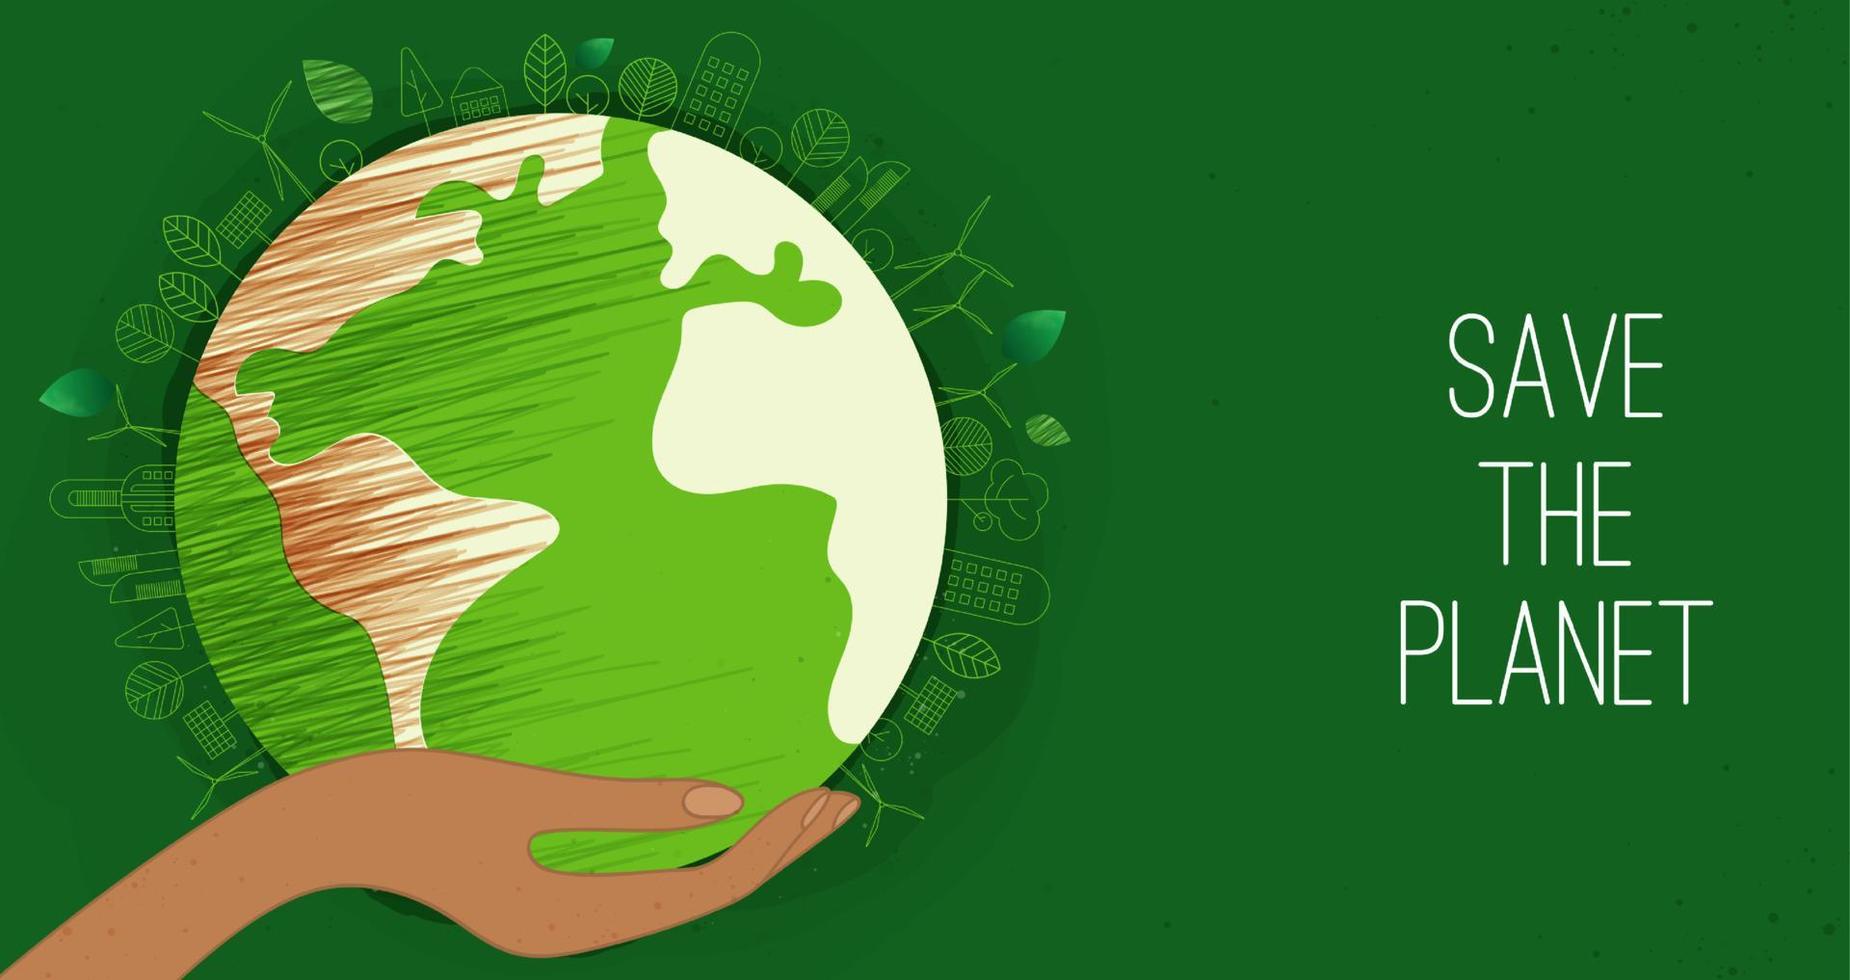 glücklicher tag der erde. tag der erde, 22. april mit dem globus, der weltkarte und den händen zur rettung der umwelt, rette den sauberen grünen planeten, ökologiekonzept. Karte für den Welttag der Erde. Vektordesign vektor